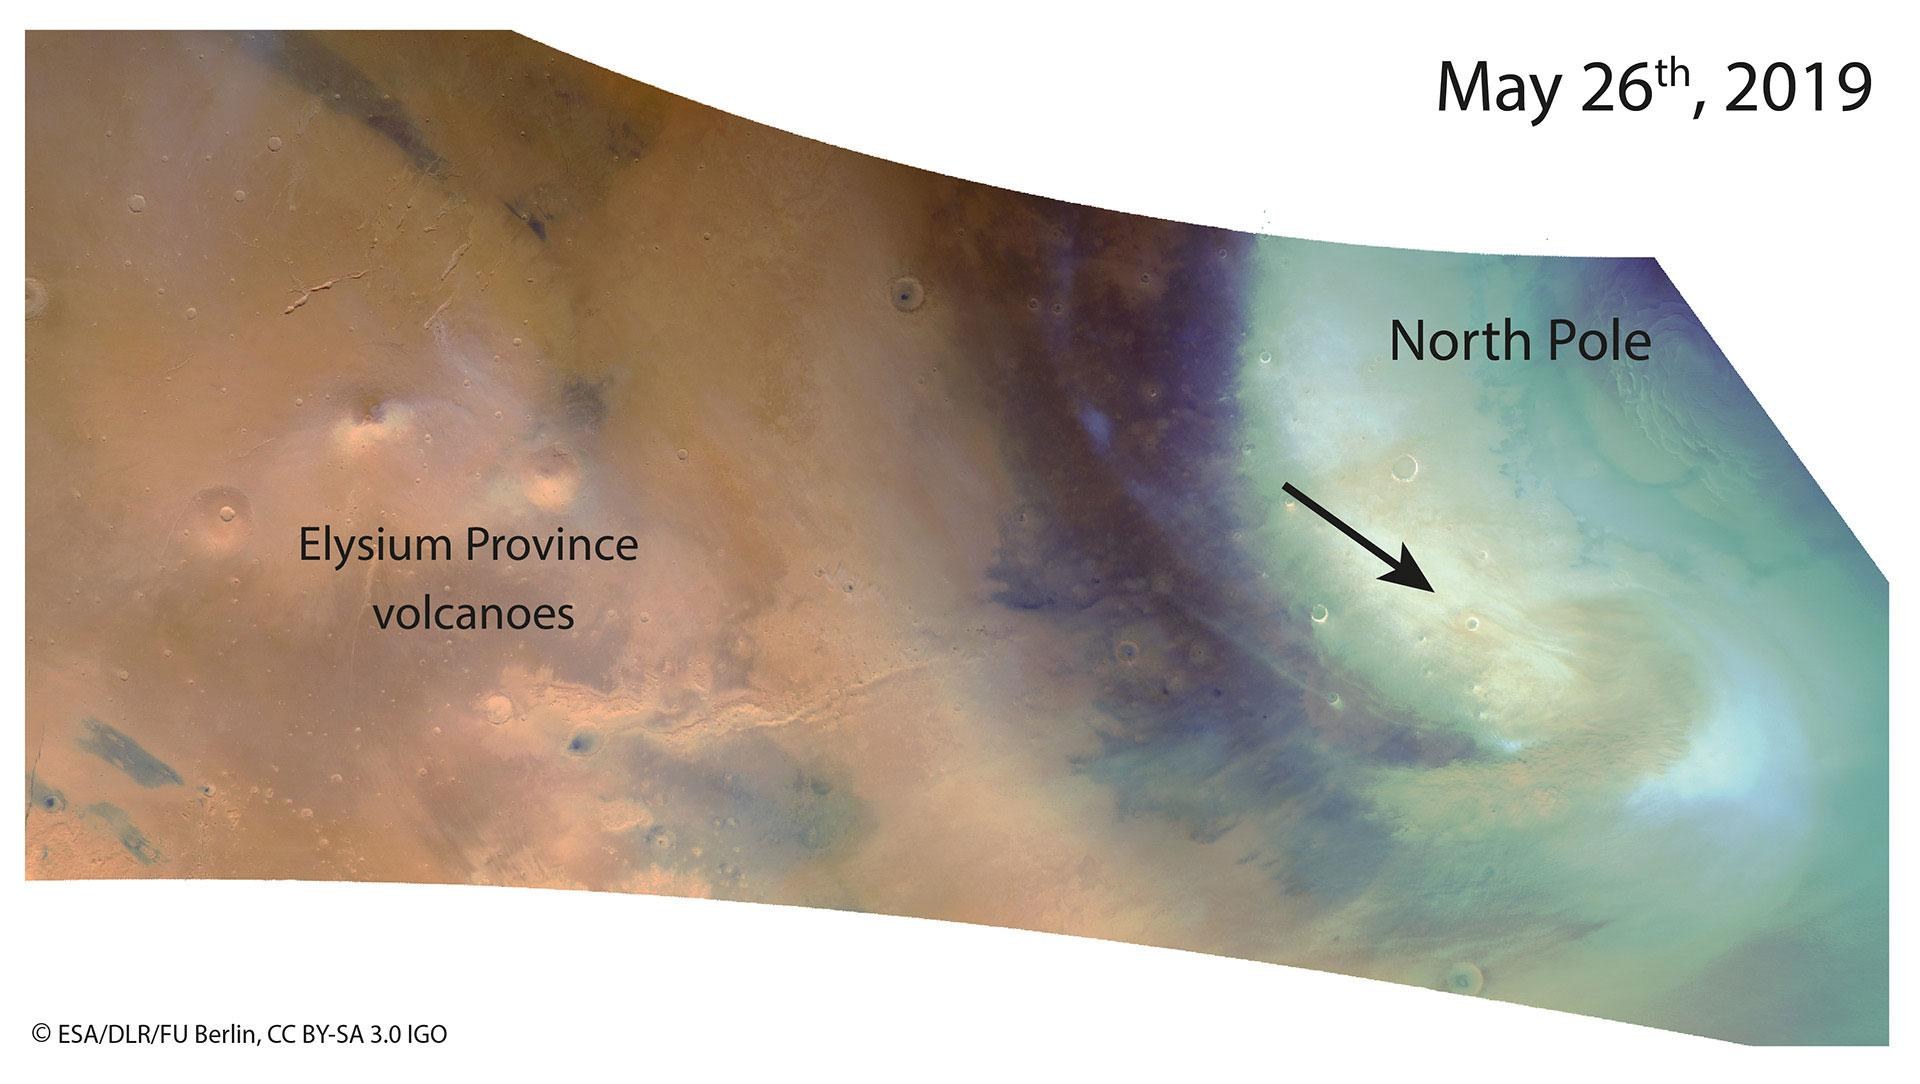 Staubsturm am Rand der Nordpoleiskappe des Mars